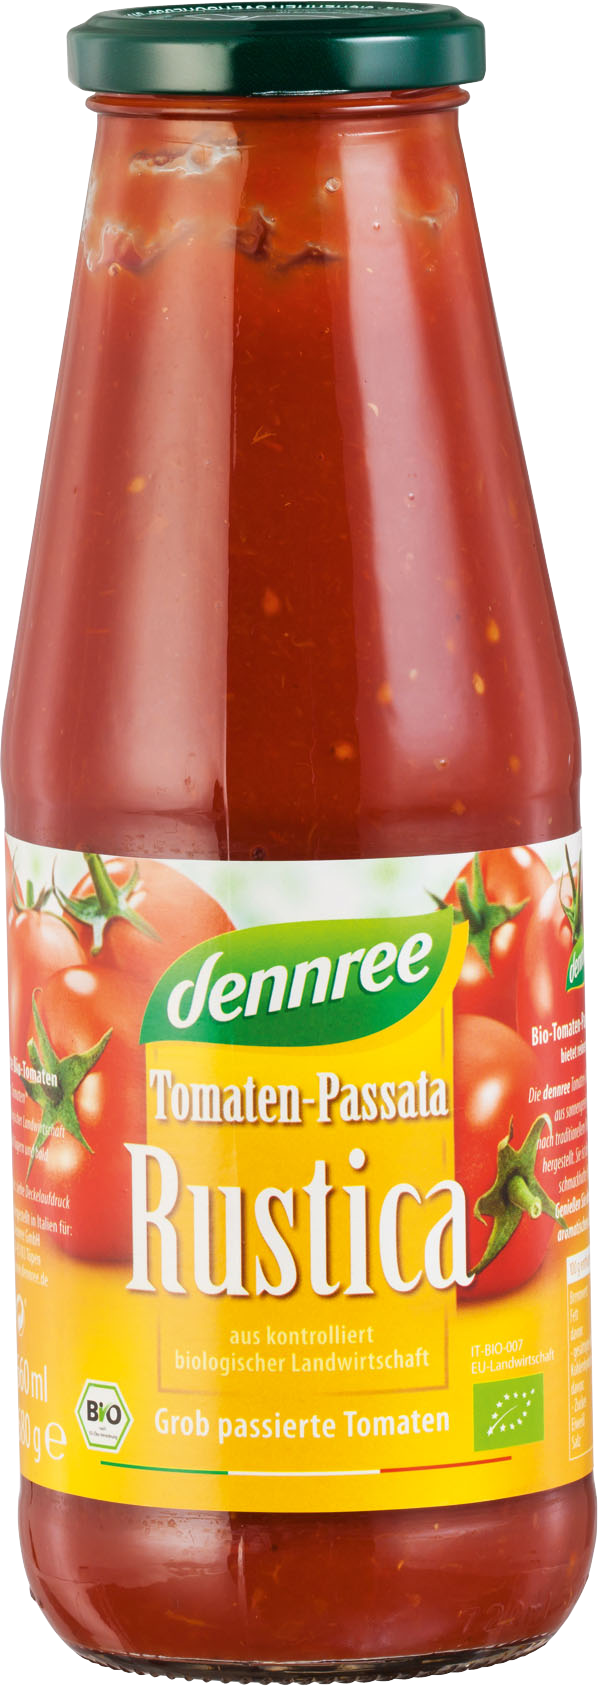 Dennree Tomaten-Passata Rustica 680g Glas